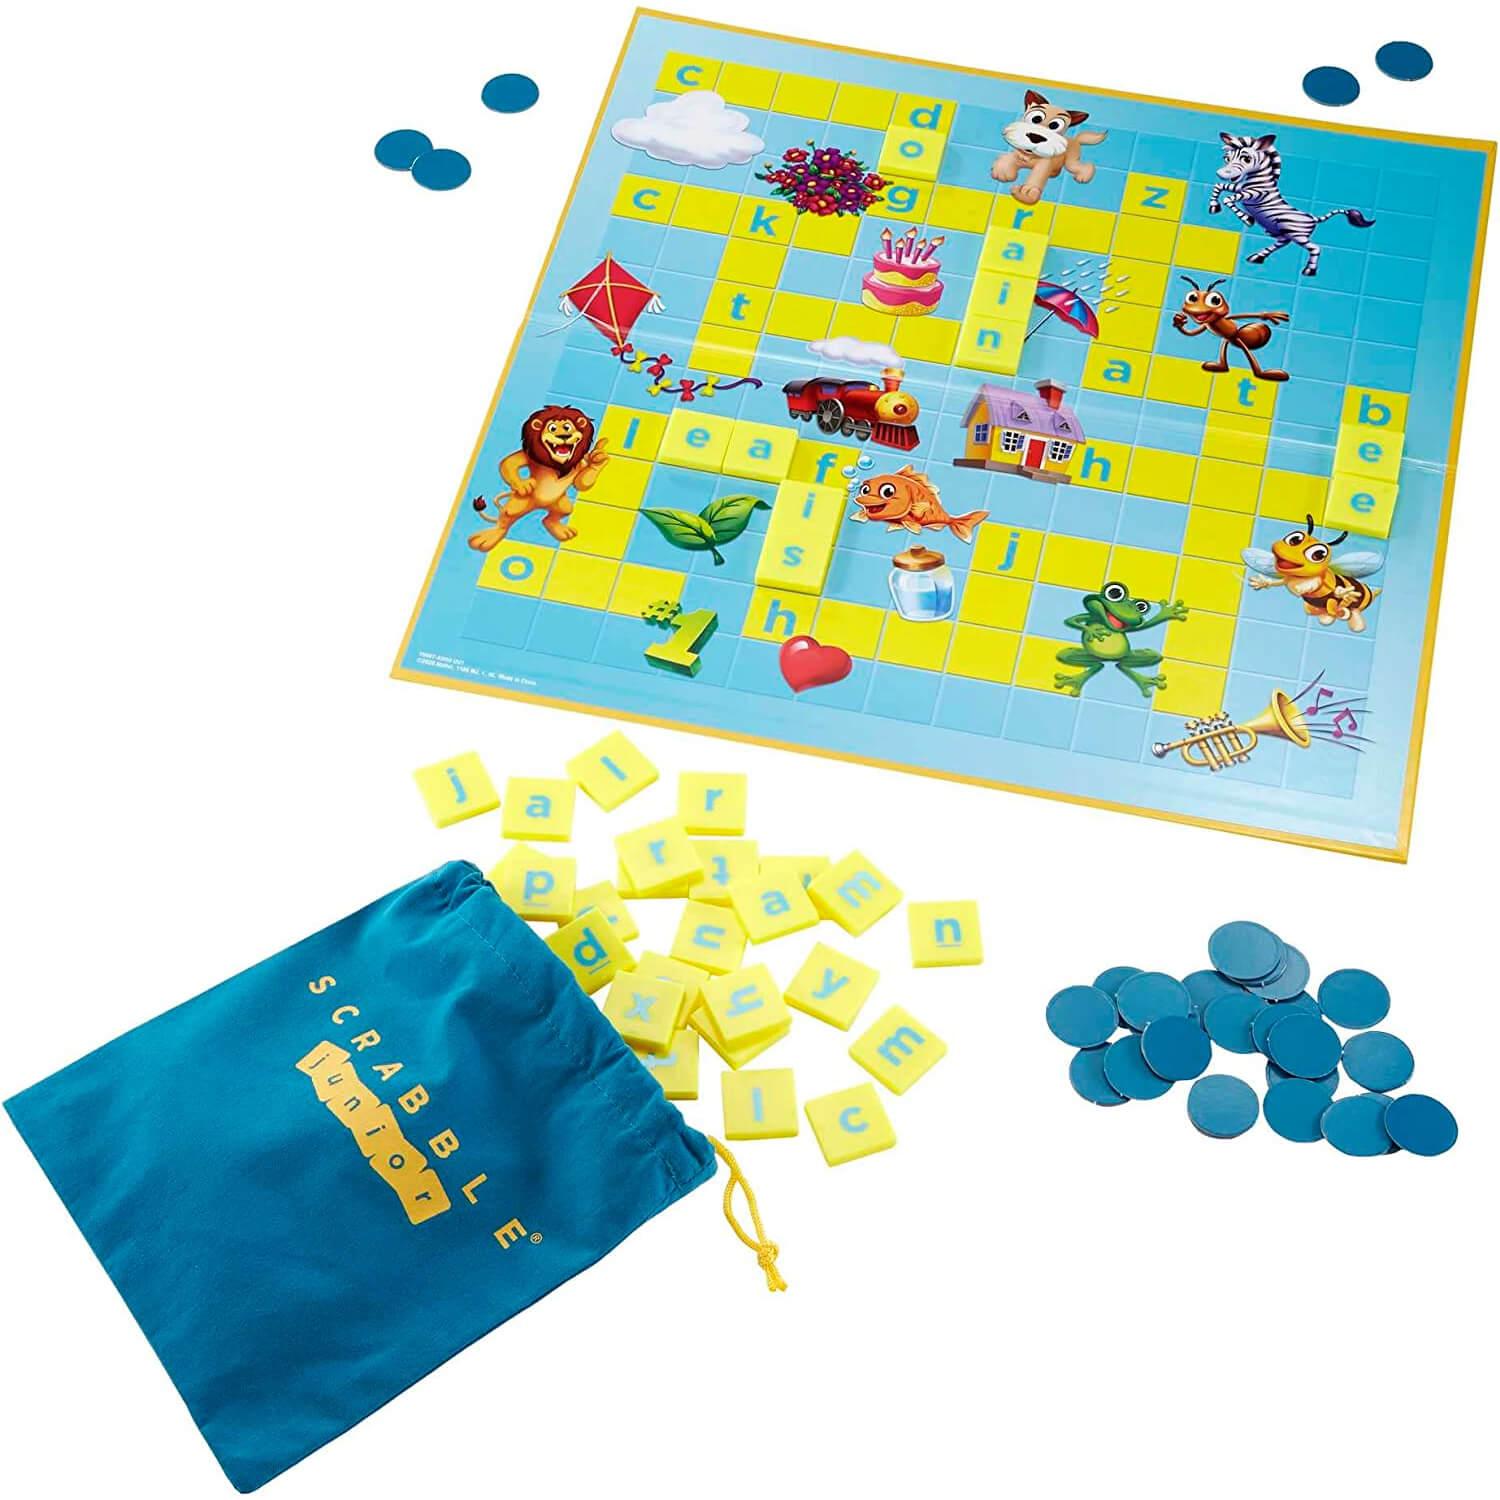 Scrabble Junior - Jeux et jouets Mattel - Avenue des Jeux